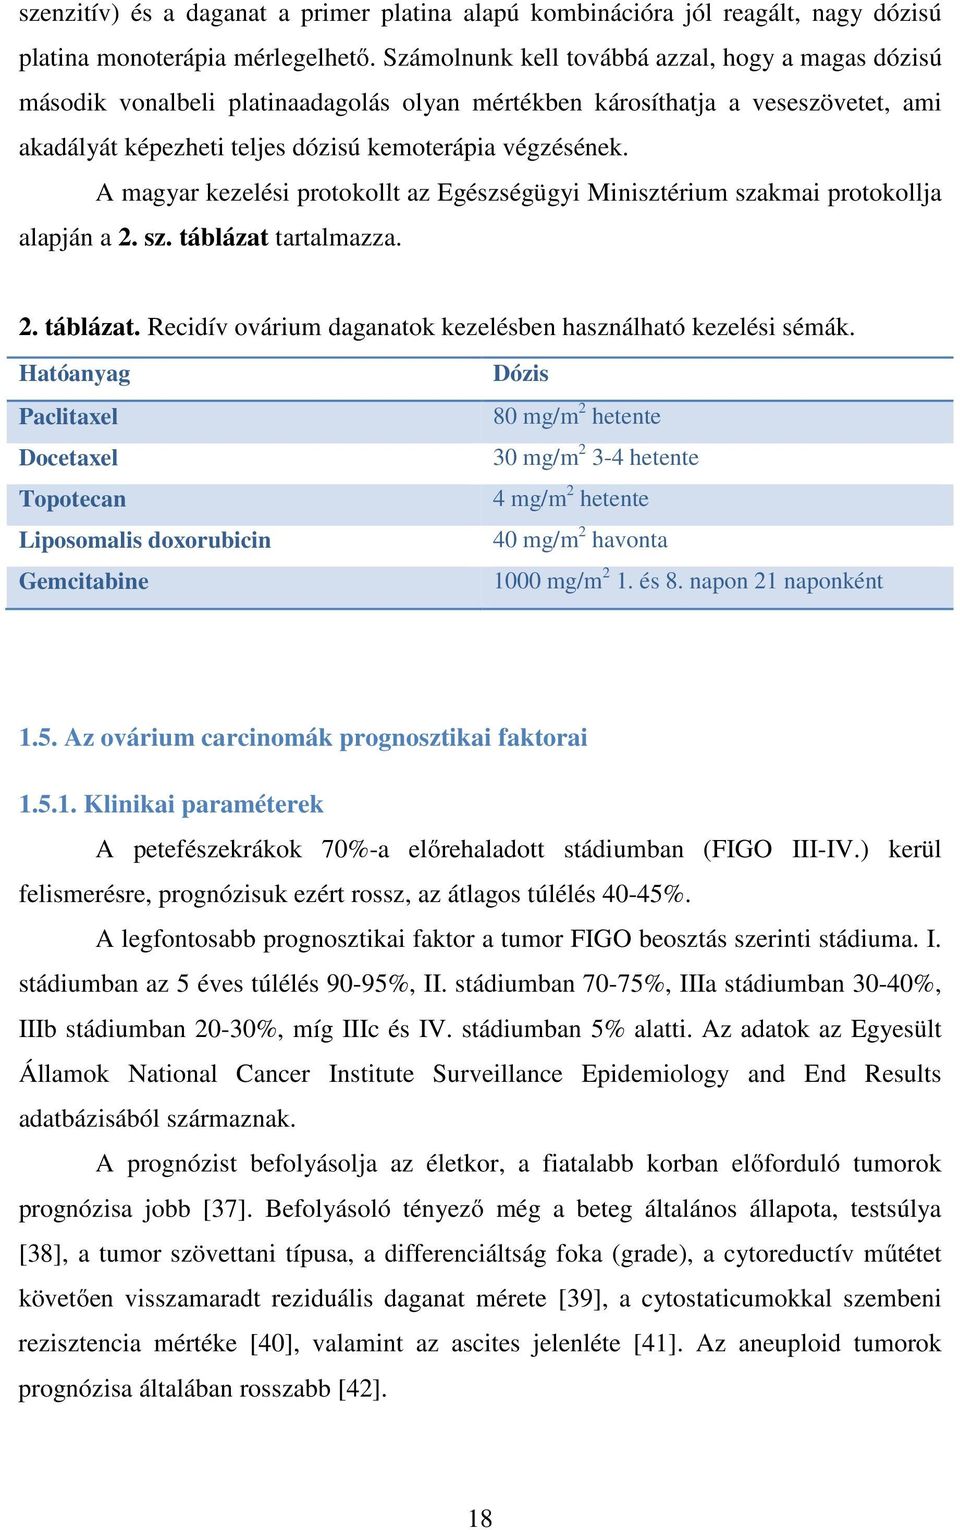 A magyar kezelési protokollt az Egészségügyi Minisztérium szakmai protokollja alapján a 2. sz. táblázat tartalmazza. 2. táblázat. Recidív ovárium daganatok kezelésben használható kezelési sémák.